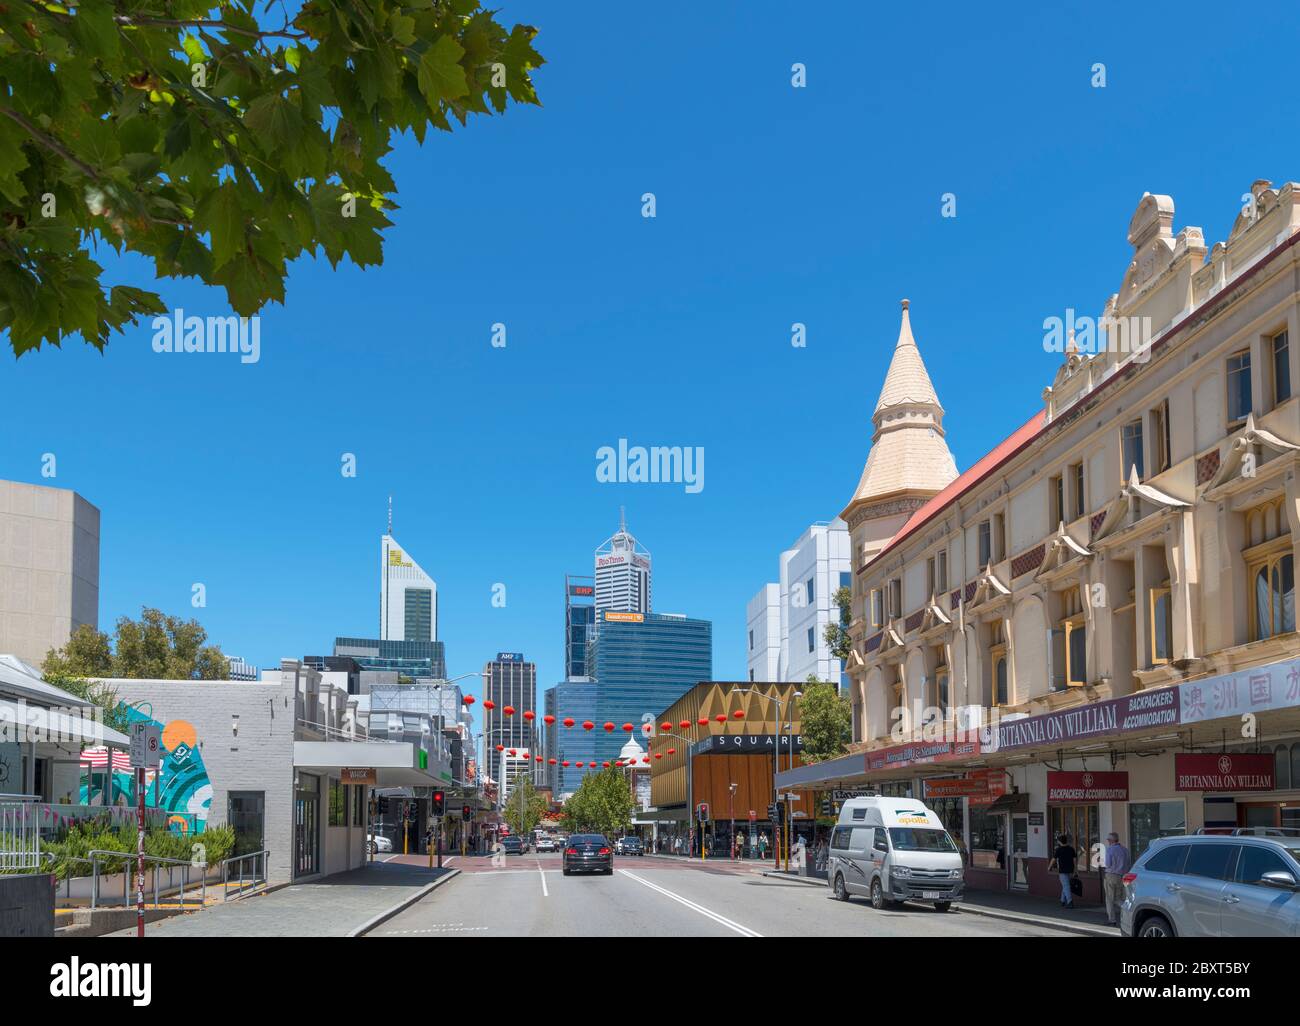 William Street dans le quartier de Northbridge, Perth, Australie occidentale, Australie Banque D'Images